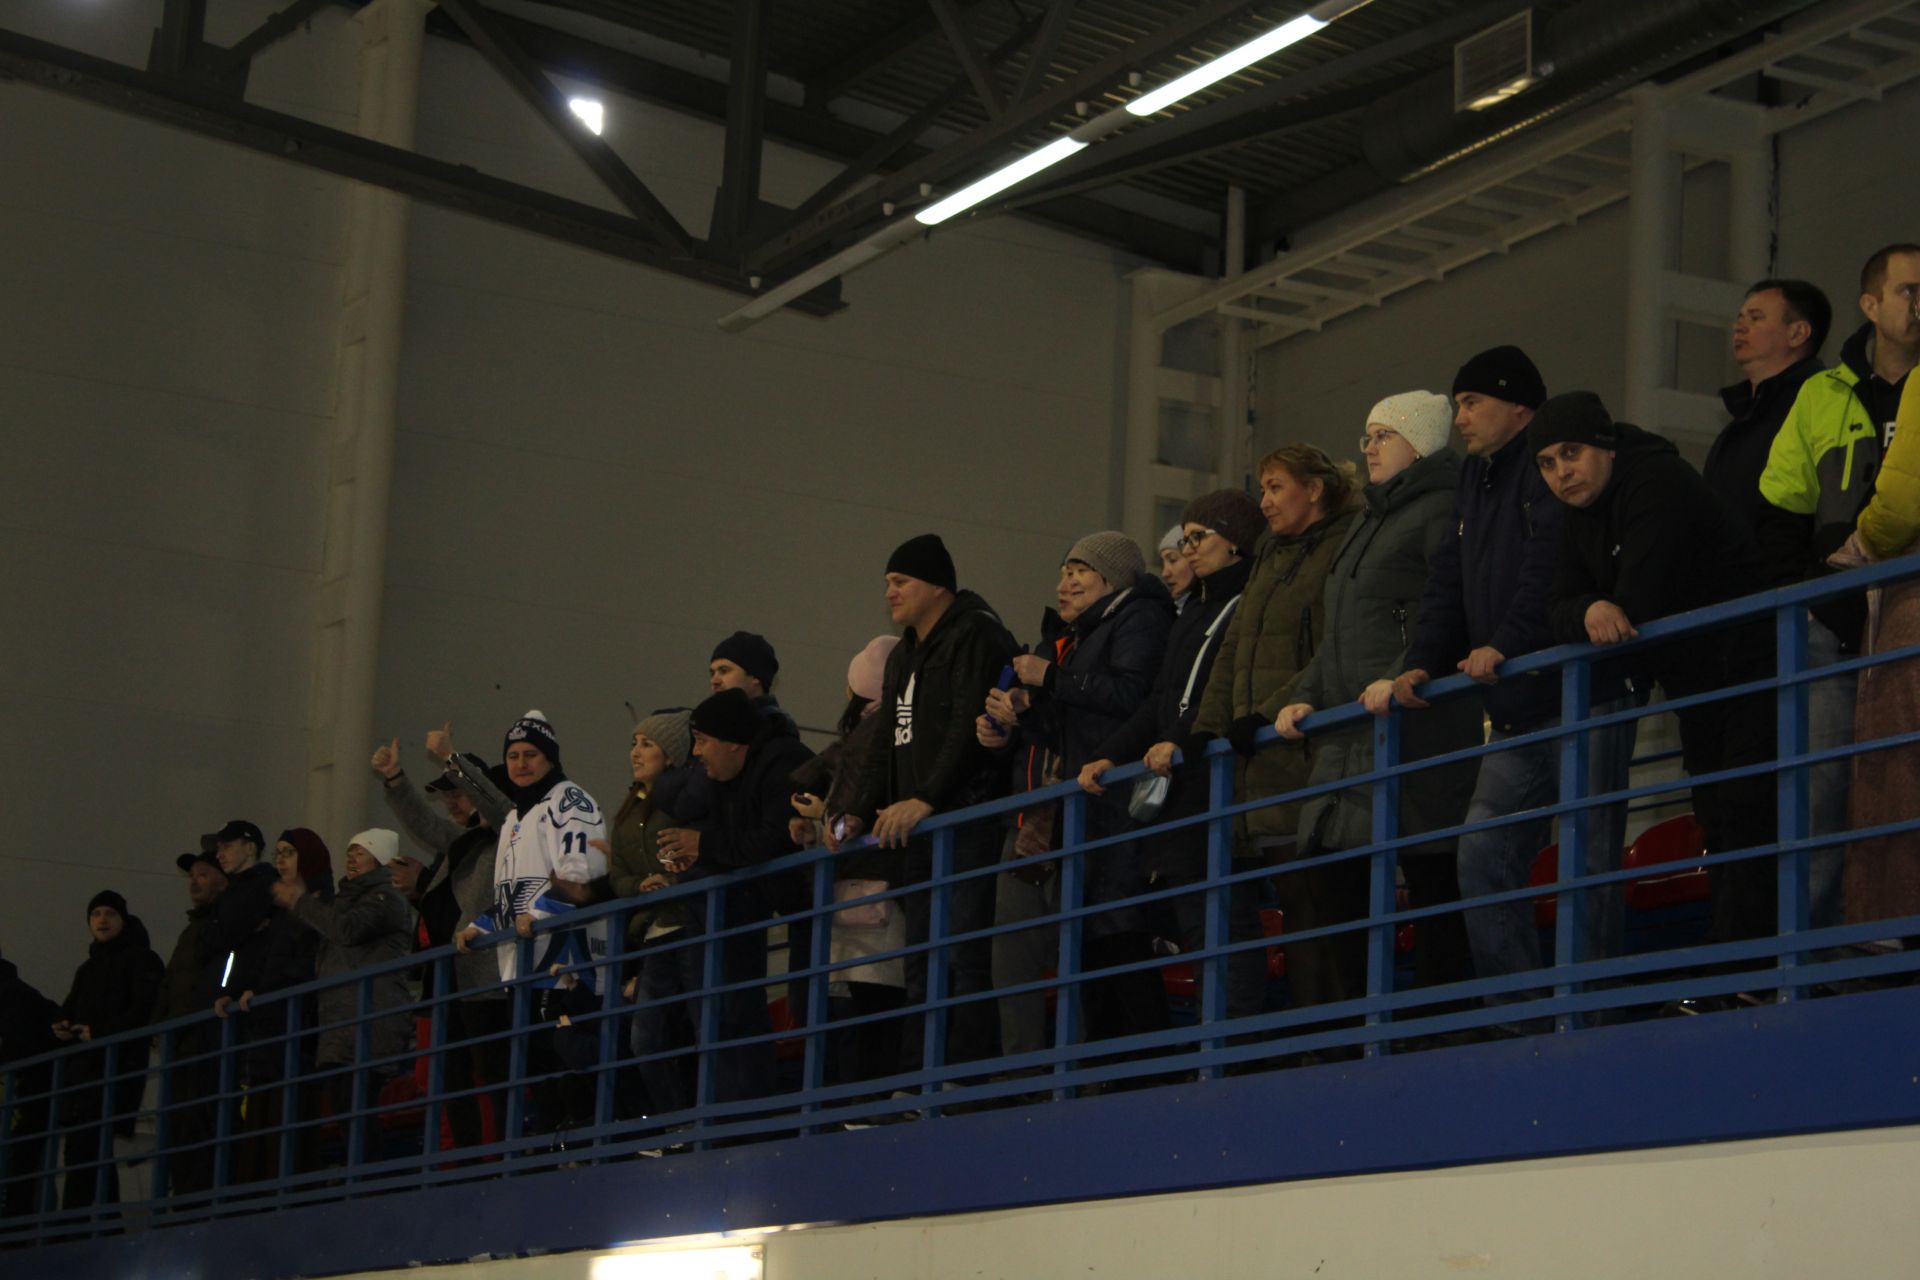 В Менделеевске состоялся Фестиваль по хоккею среди команд мальчиков 2011 года рождения